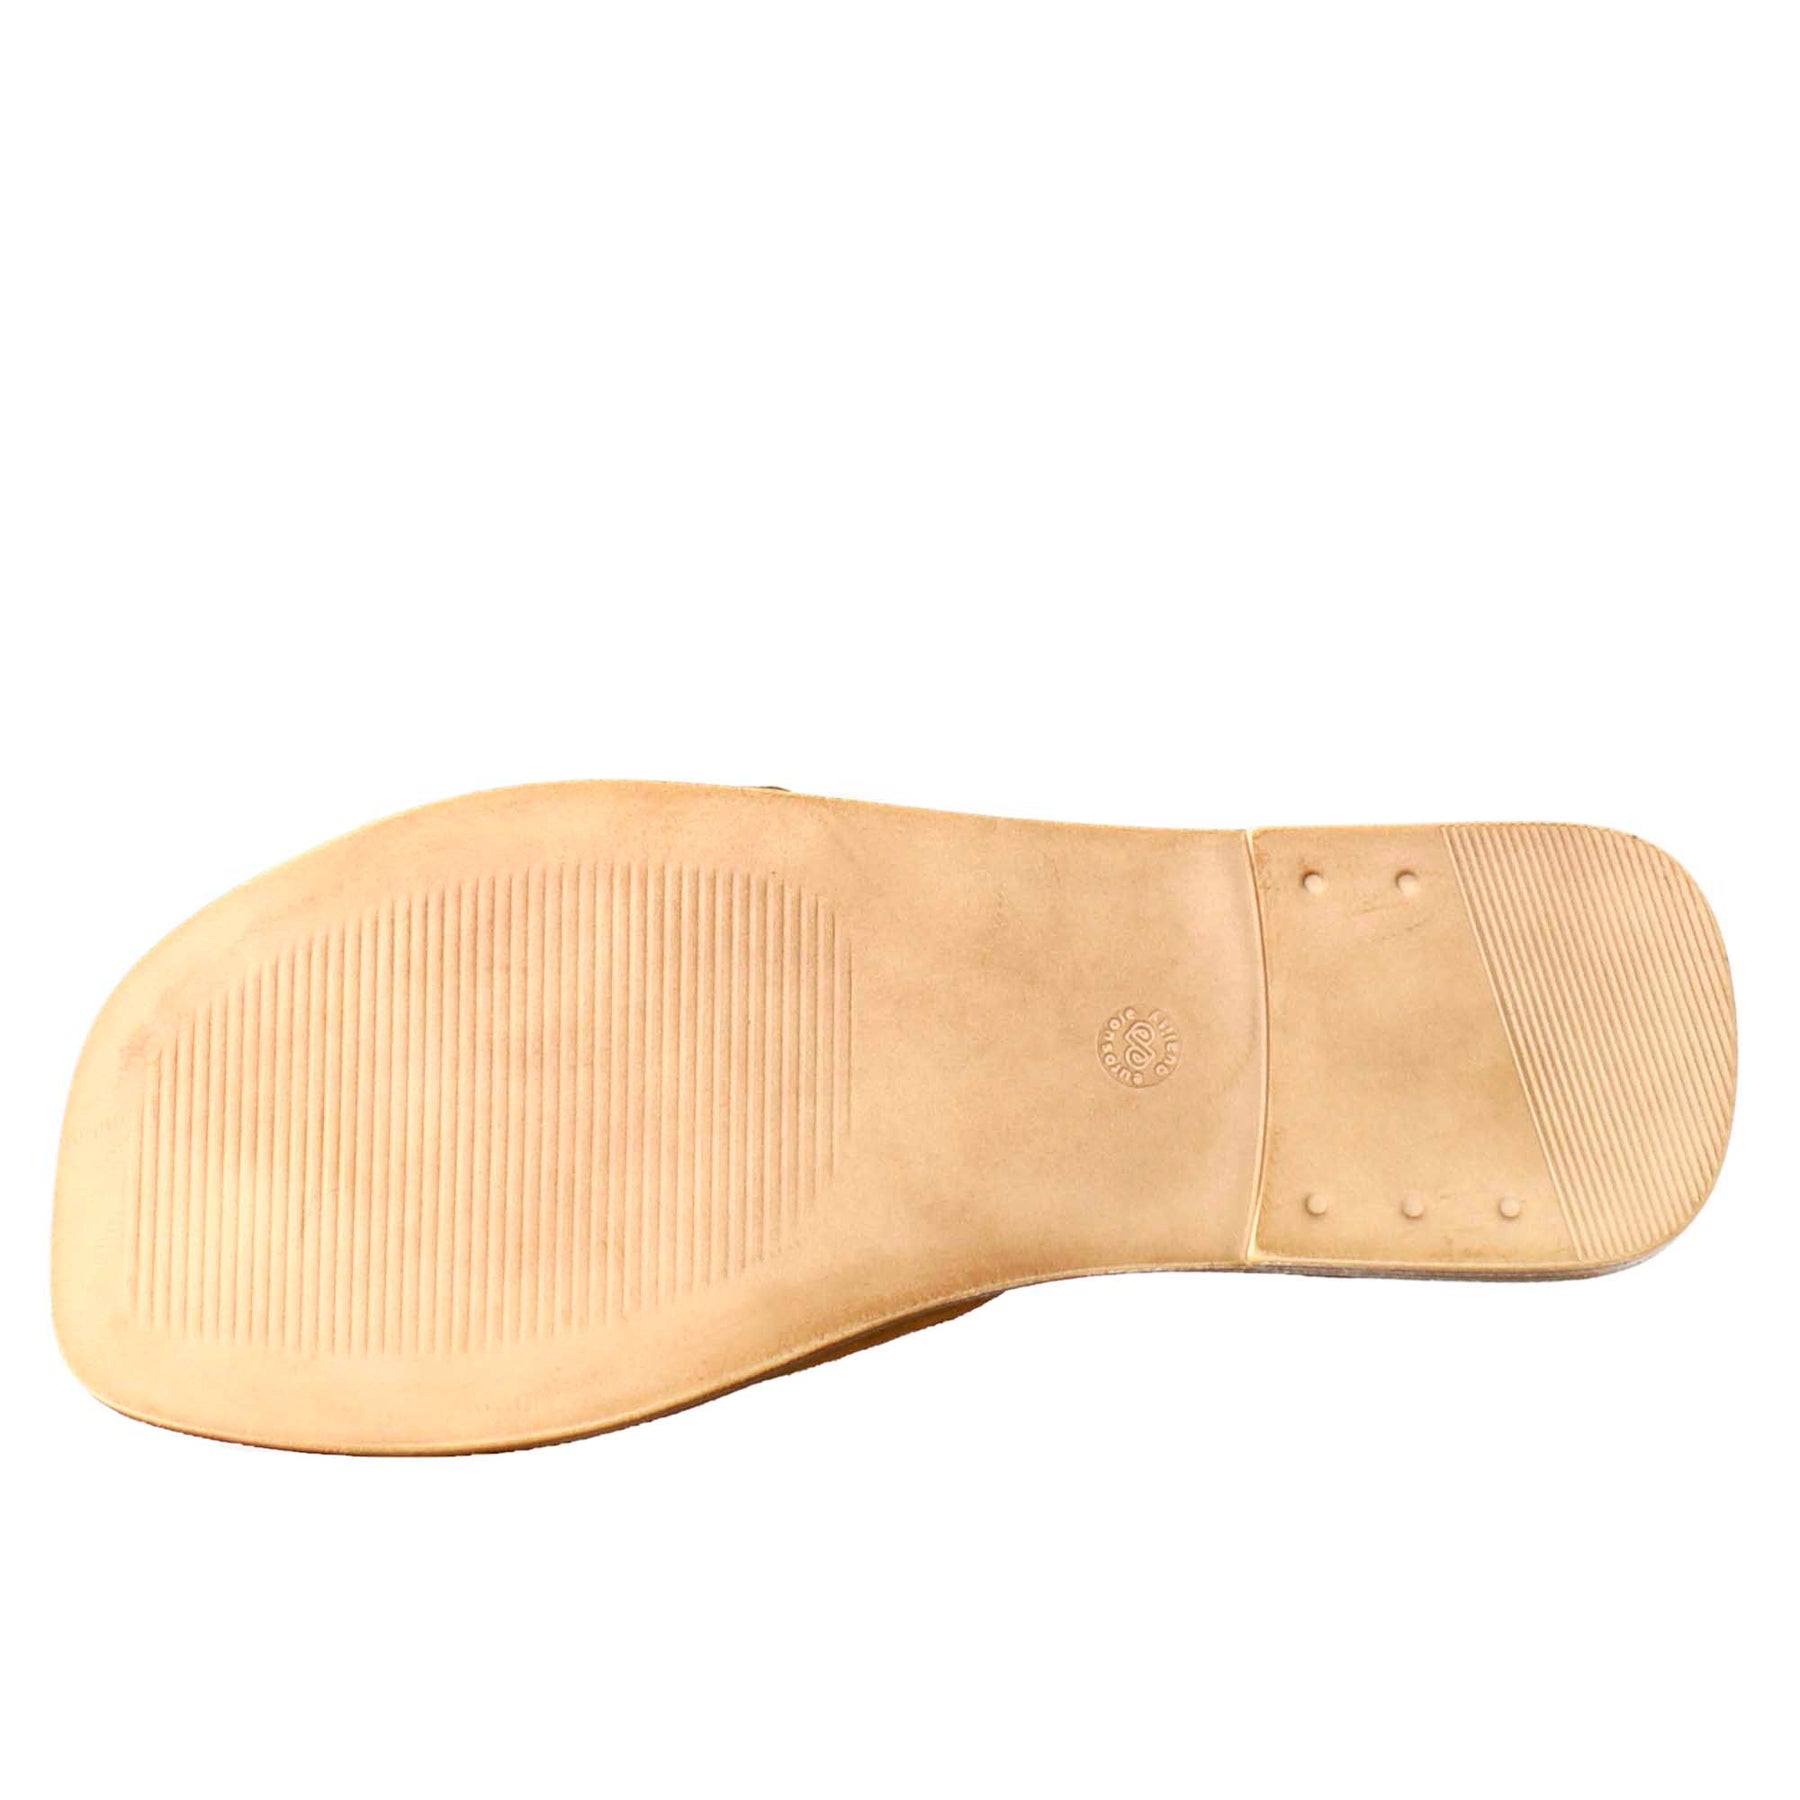 Sandalo basso da donna in pelle scamosciata marrone